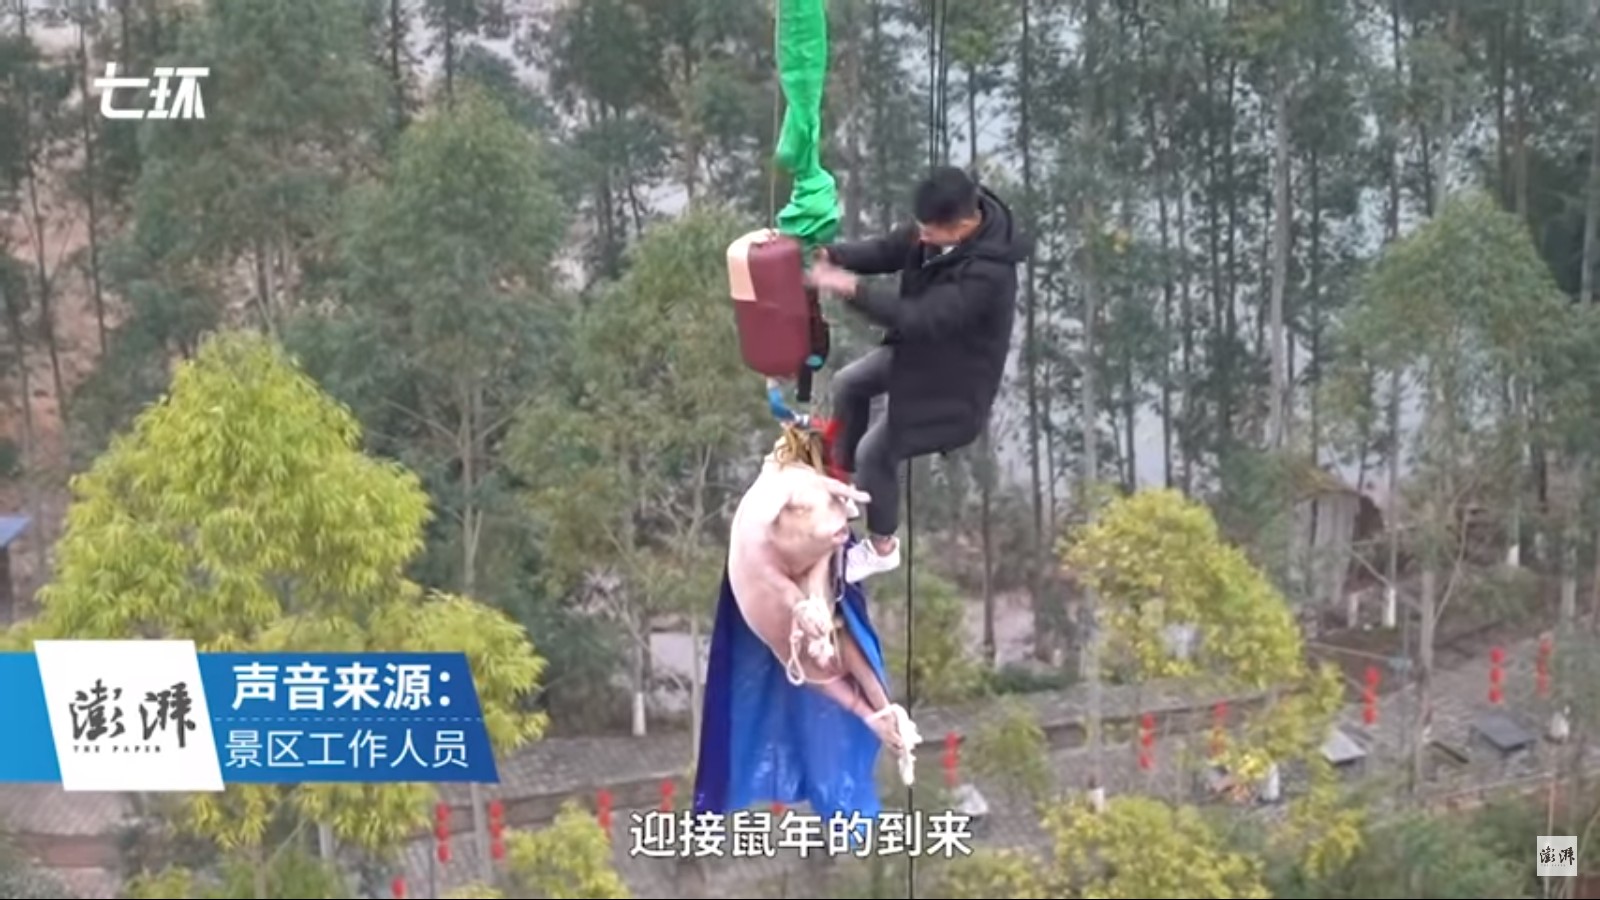 Porco é jogado de bungee jumping para divulgar parque temático na China (Foto: Reprodução/The Paper)